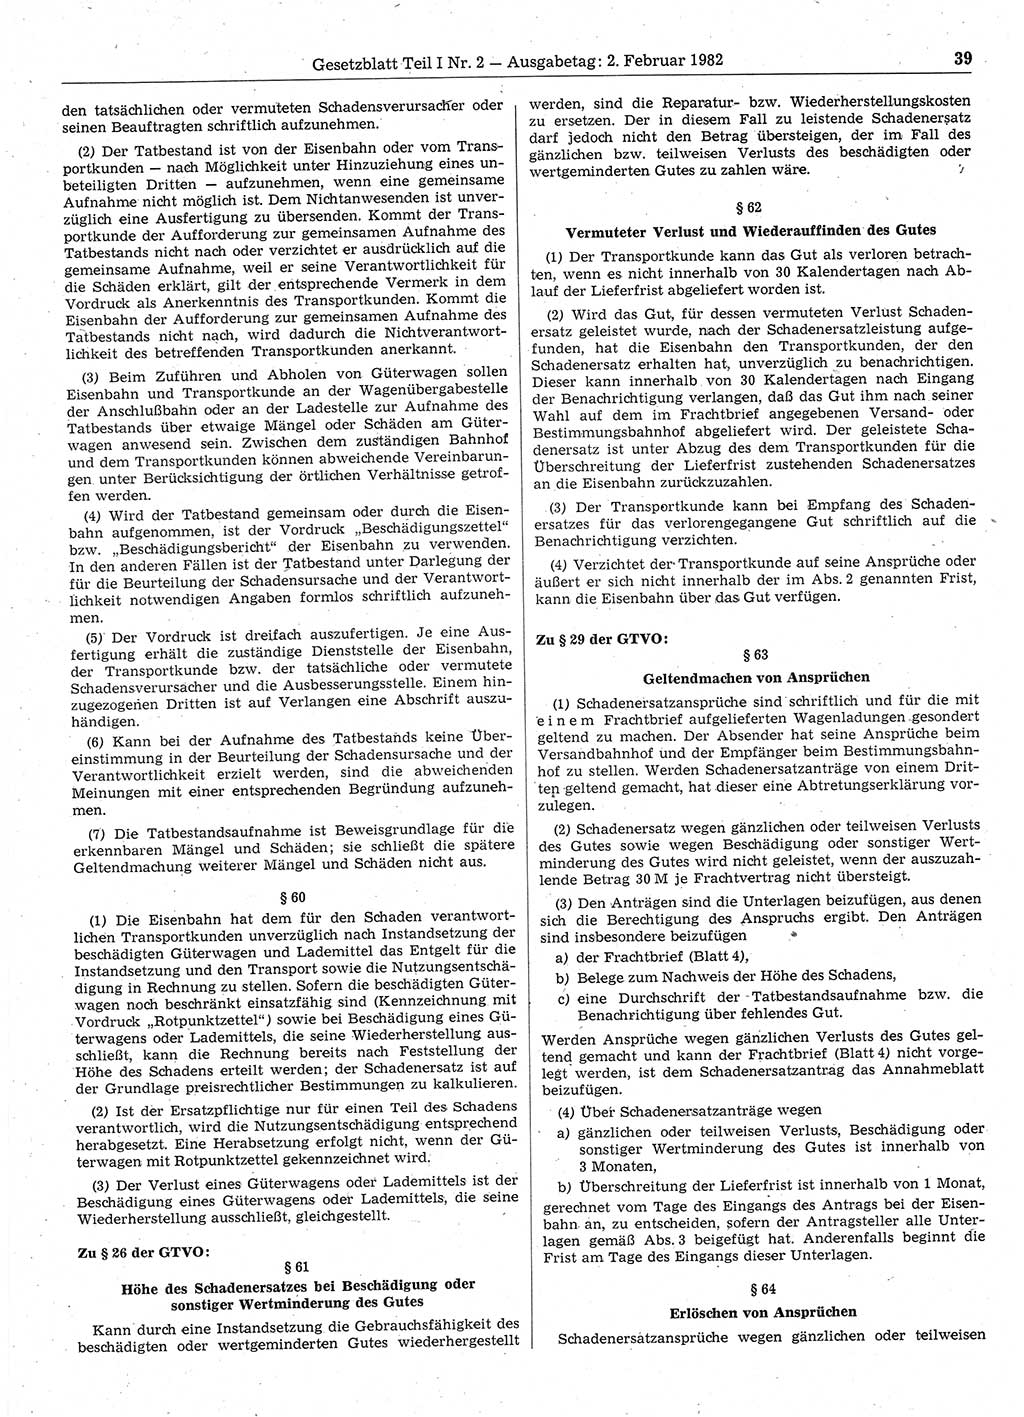 Gesetzblatt (GBl.) der Deutschen Demokratischen Republik (DDR) Teil Ⅰ 1982, Seite 39 (GBl. DDR Ⅰ 1982, S. 39)